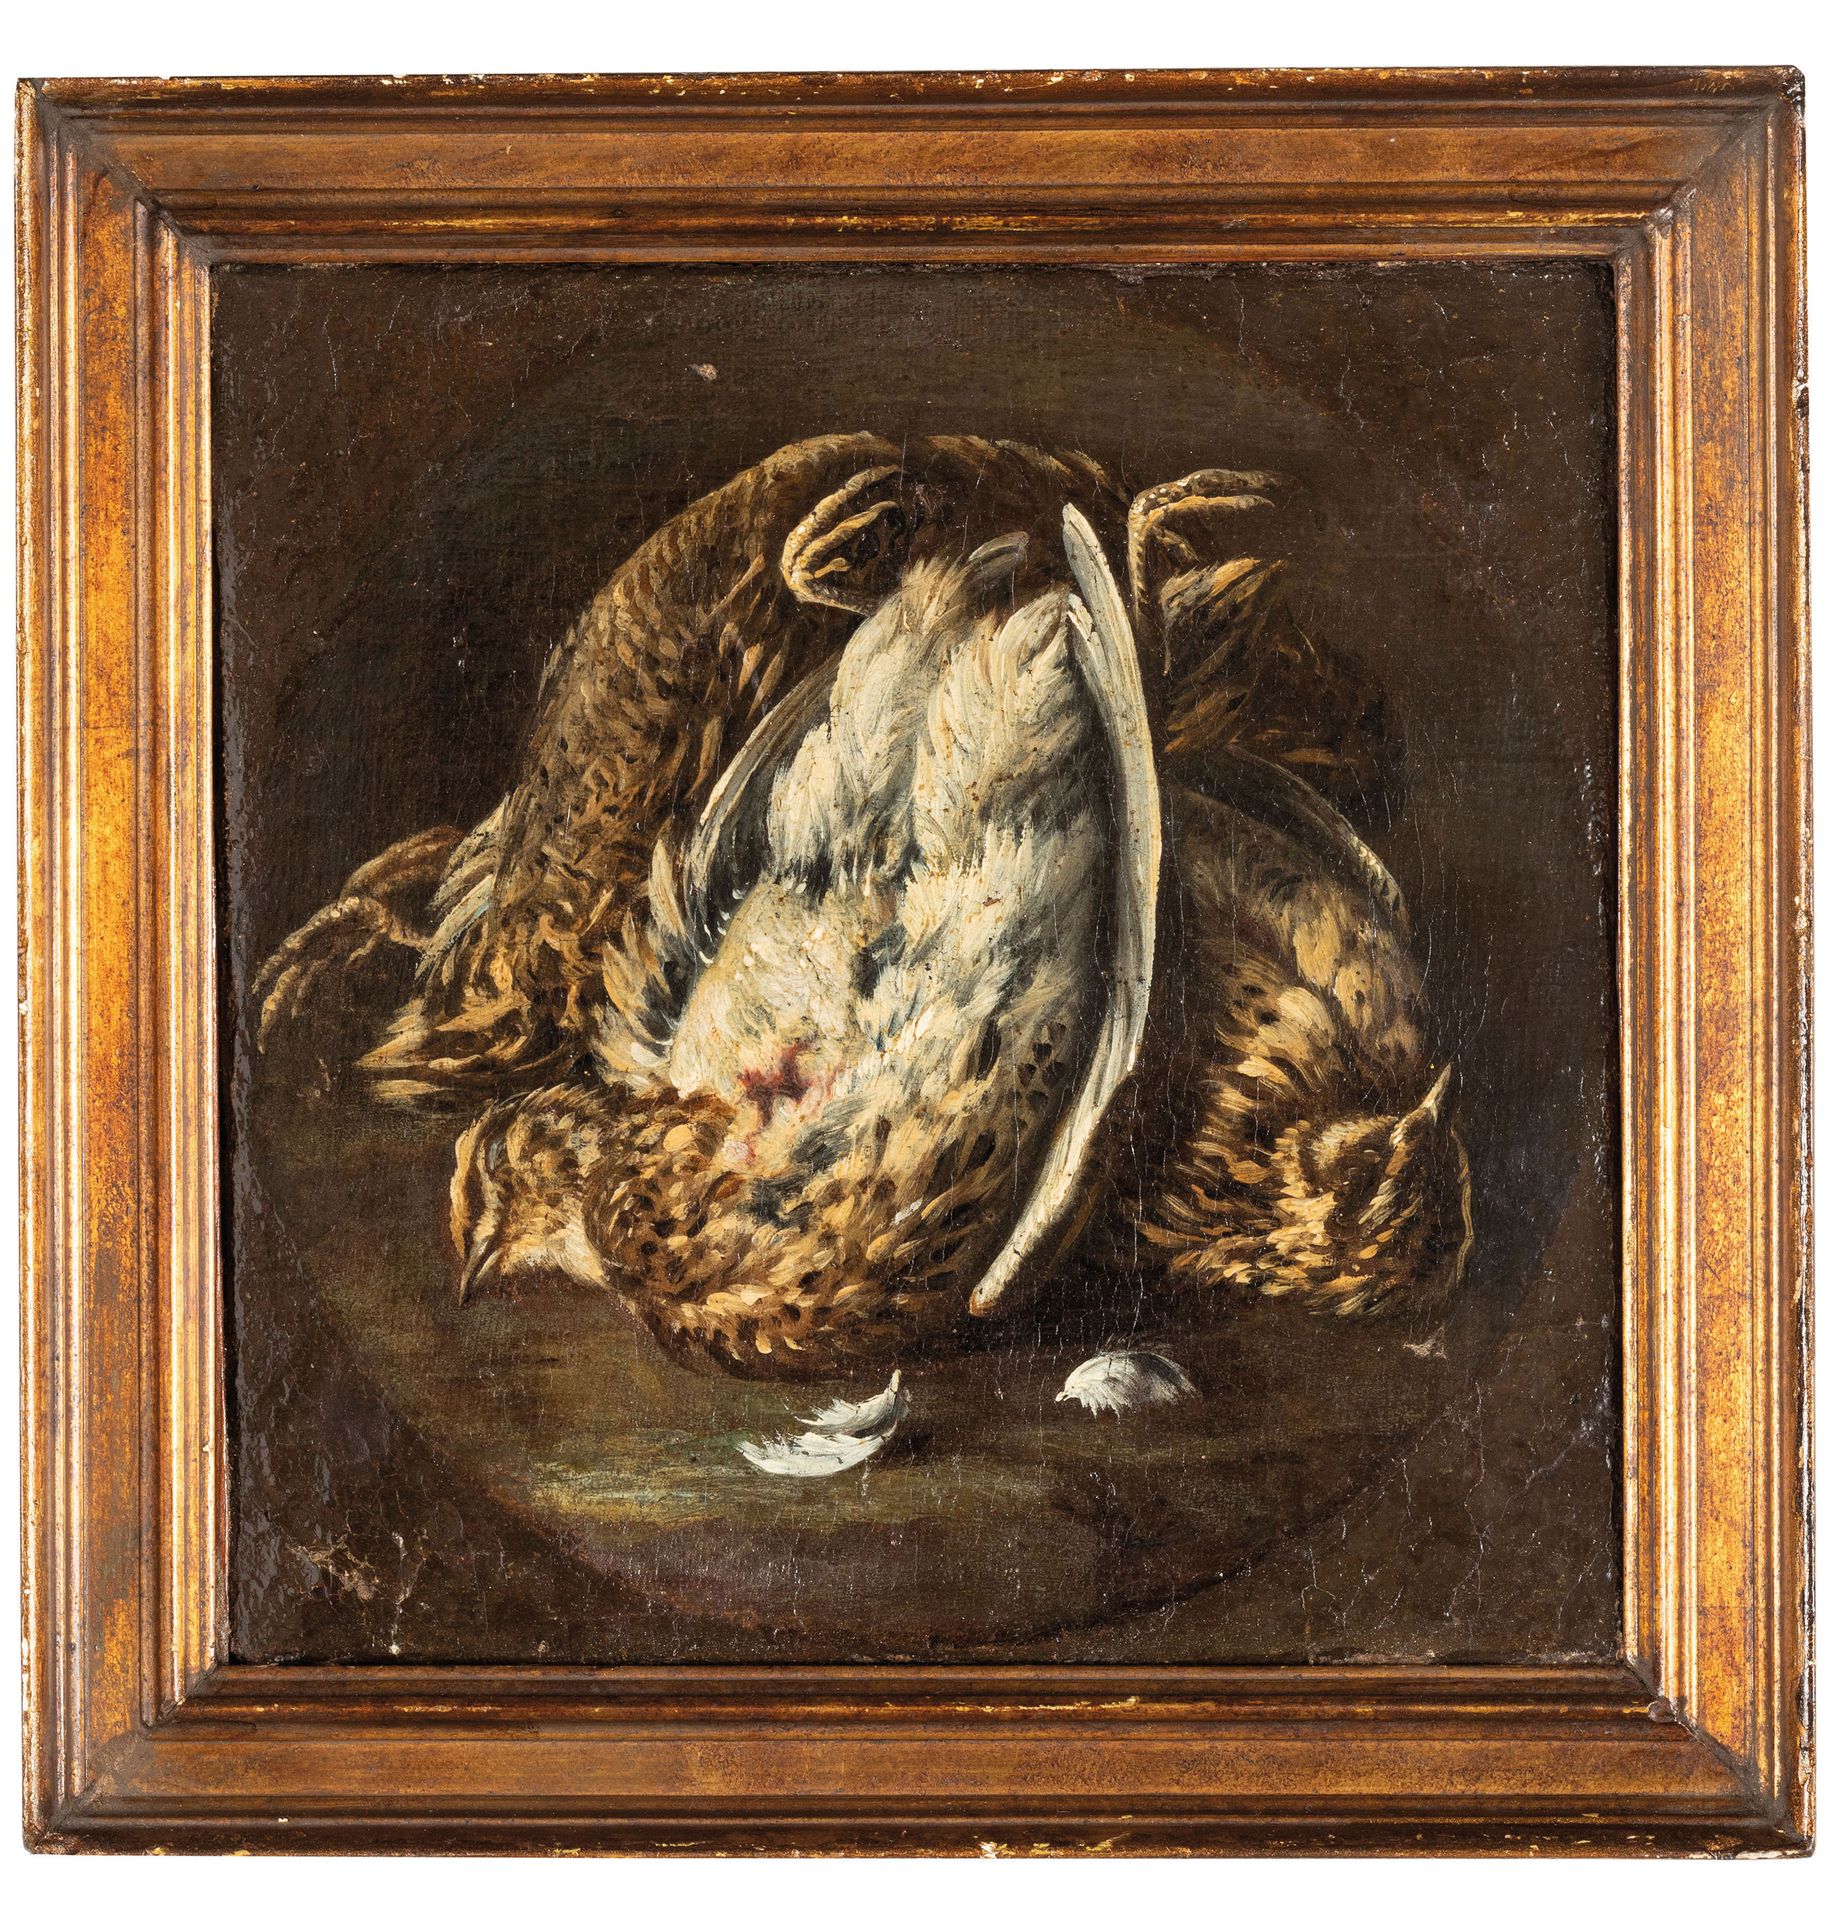 FELICE BOSELLI (attr. A) (Piacenza, 1651 - Parma, 1732)
Juego
Óleo sobre lienzo,&hellip;